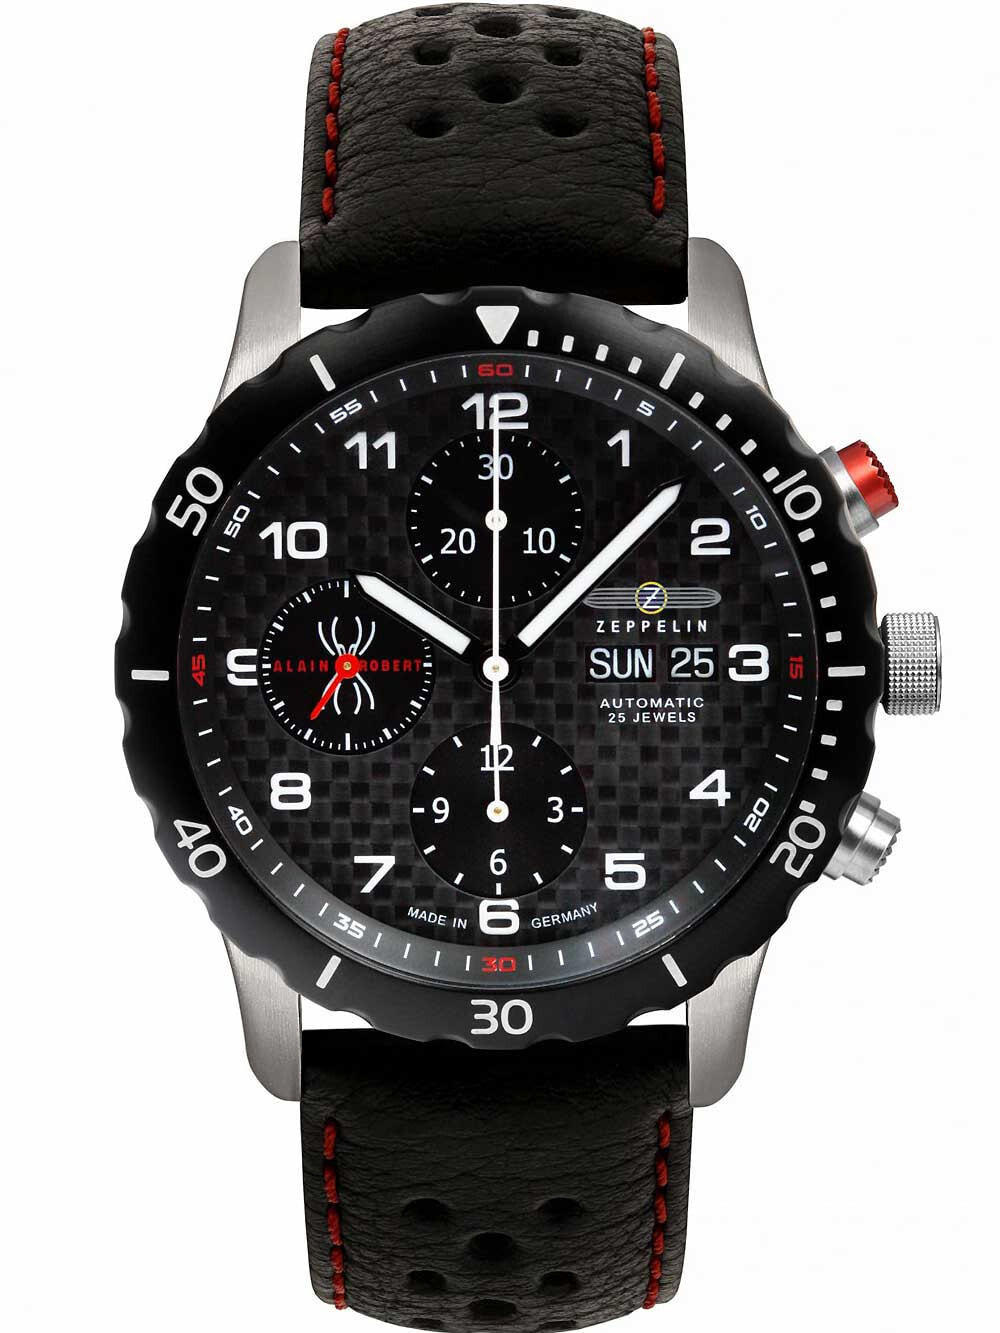 Мужские наручные часы с черным кожаным ремешком Zeppelin 7216-2 Night Cruise automatic chrono 42 mm 10ATM